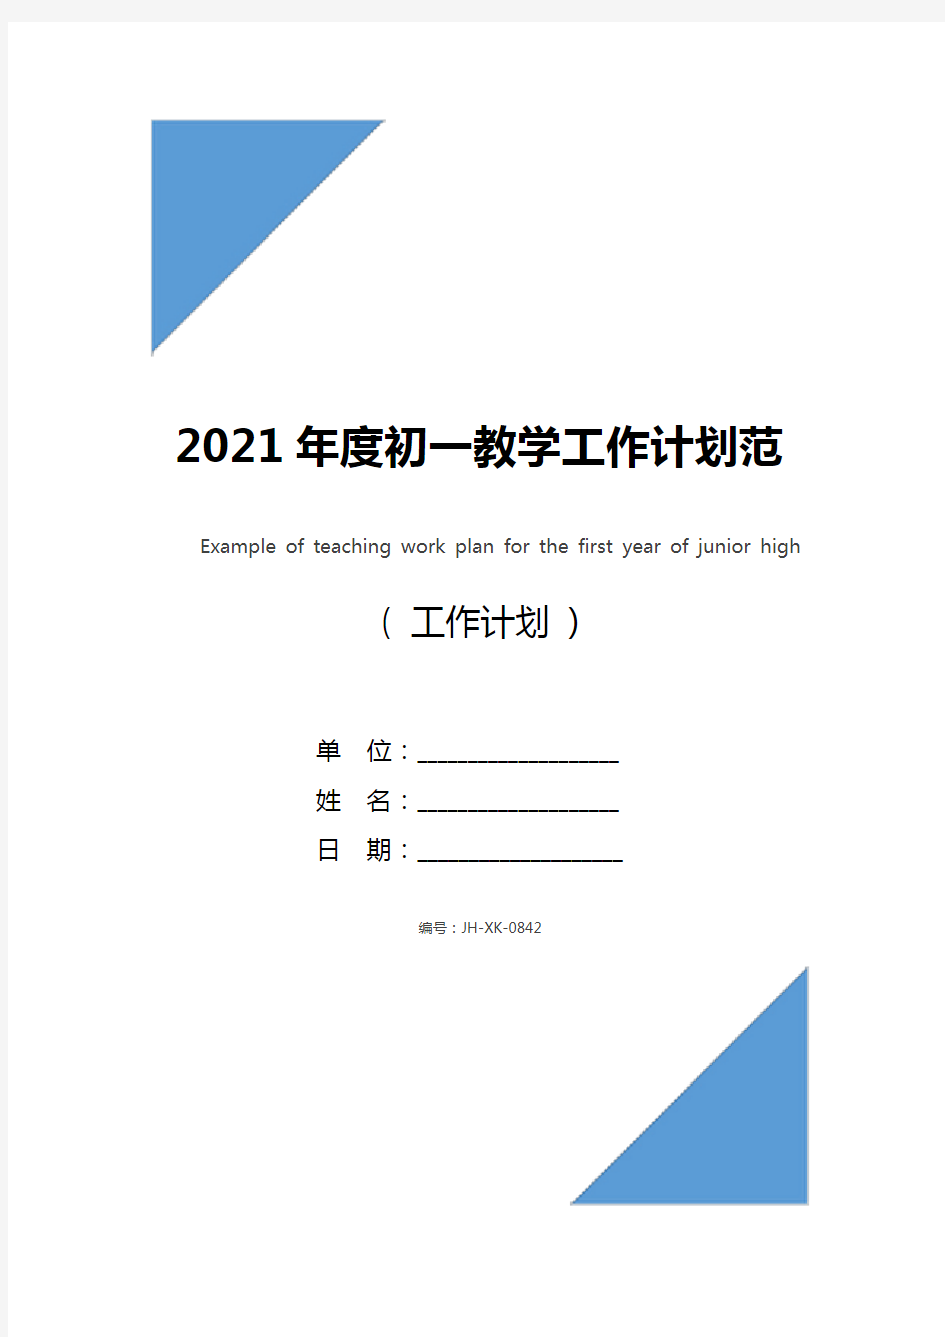 2021年度初一教学工作计划范例(新编版)